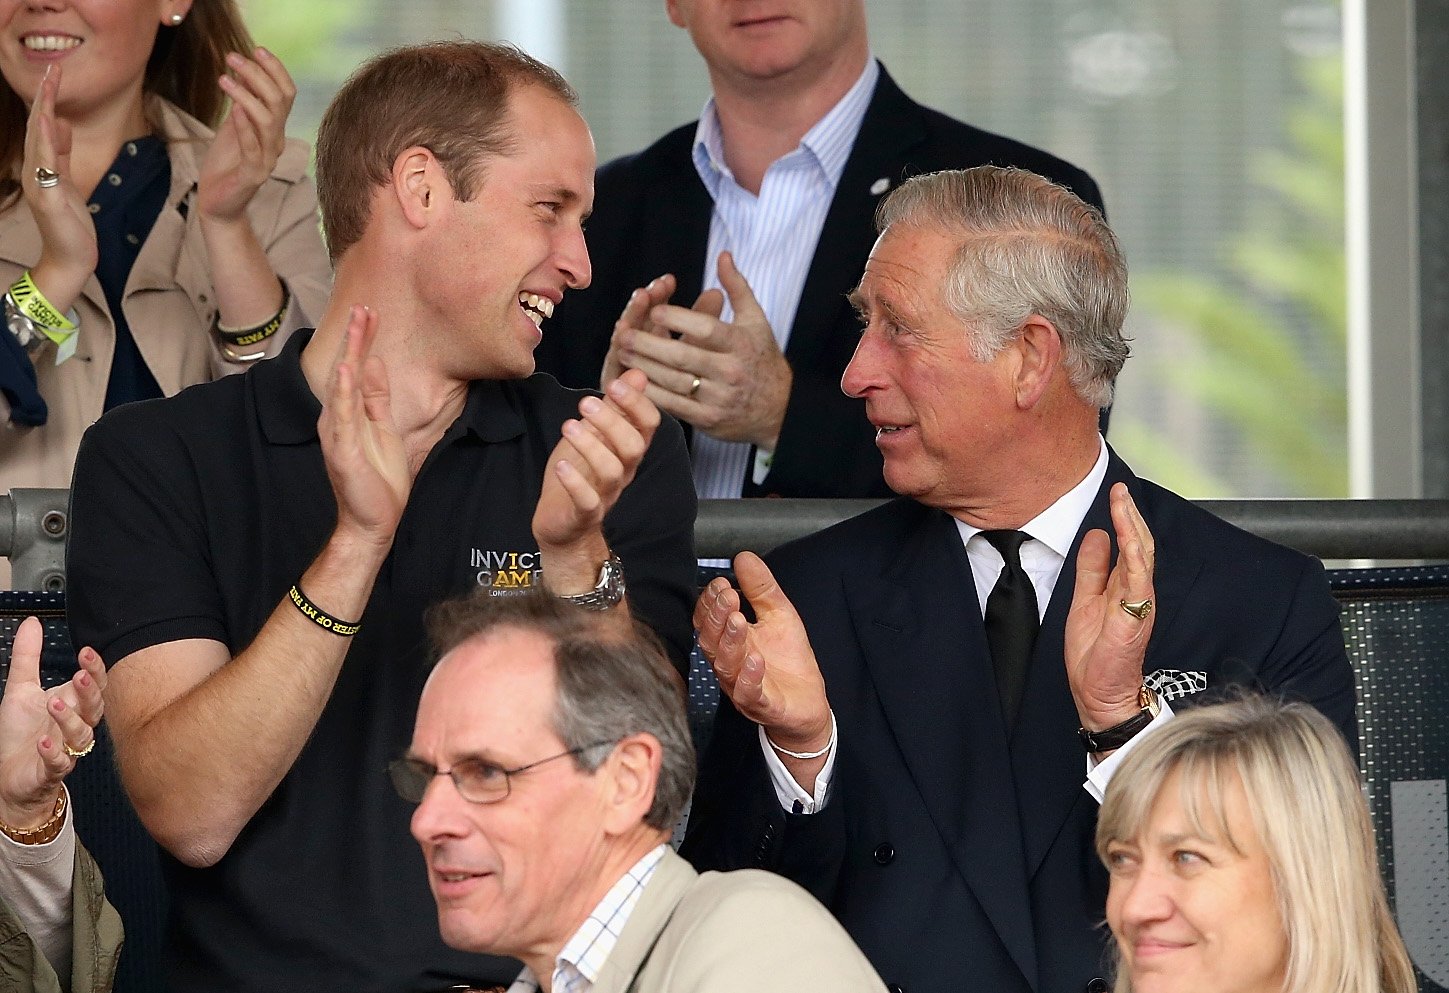 Prinz William und Prinz Charles während der Invictus Games in Lee Valley am 11. September 2014 in London, England | Quelle: Getty Images